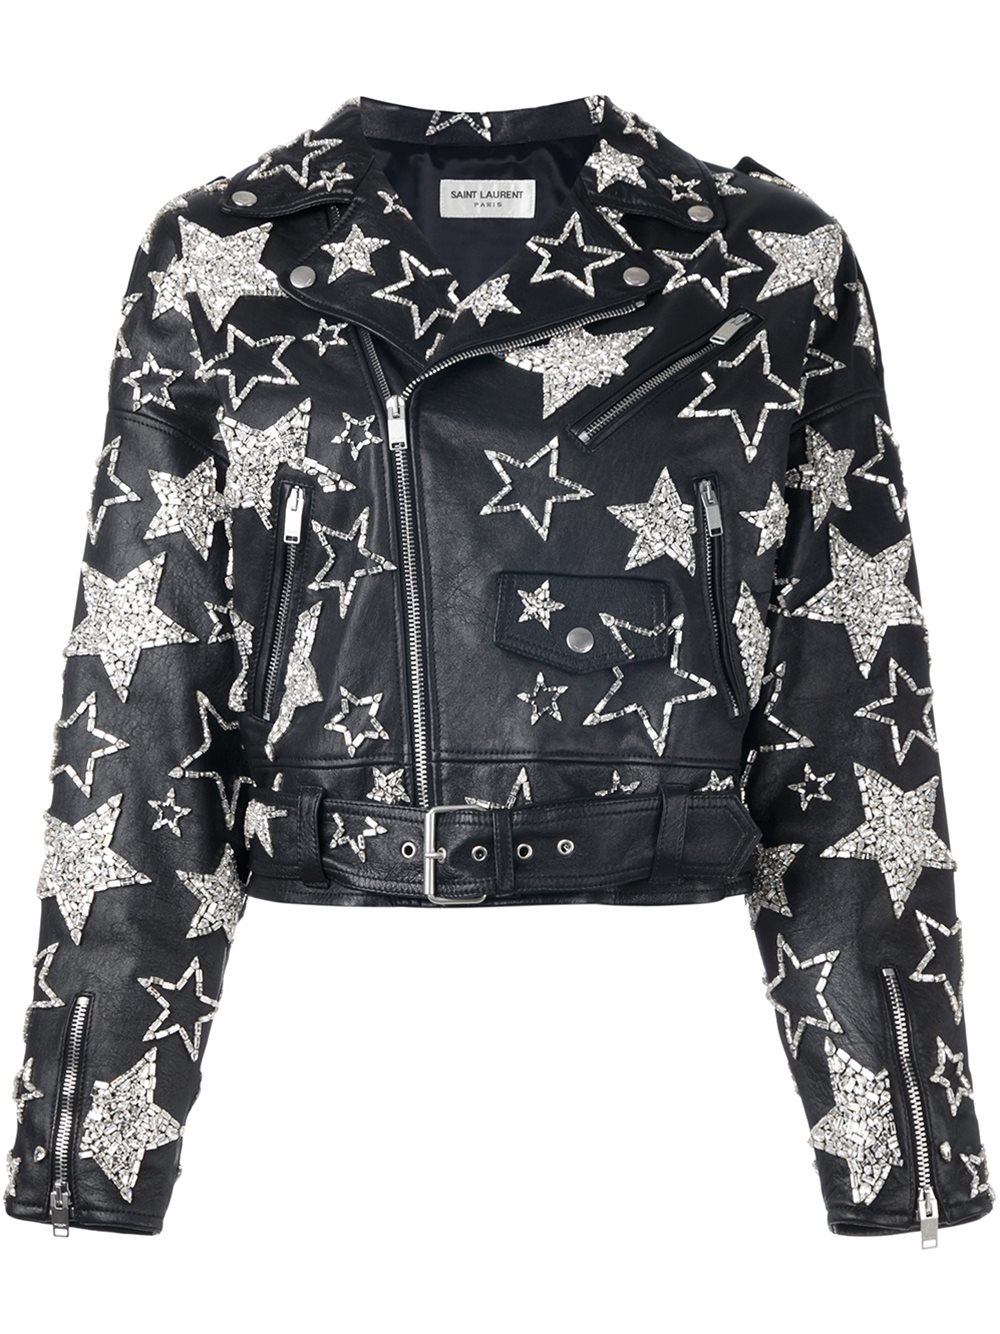 Saint Laurent Star Embellished Leather Jacket in Black | Lyst